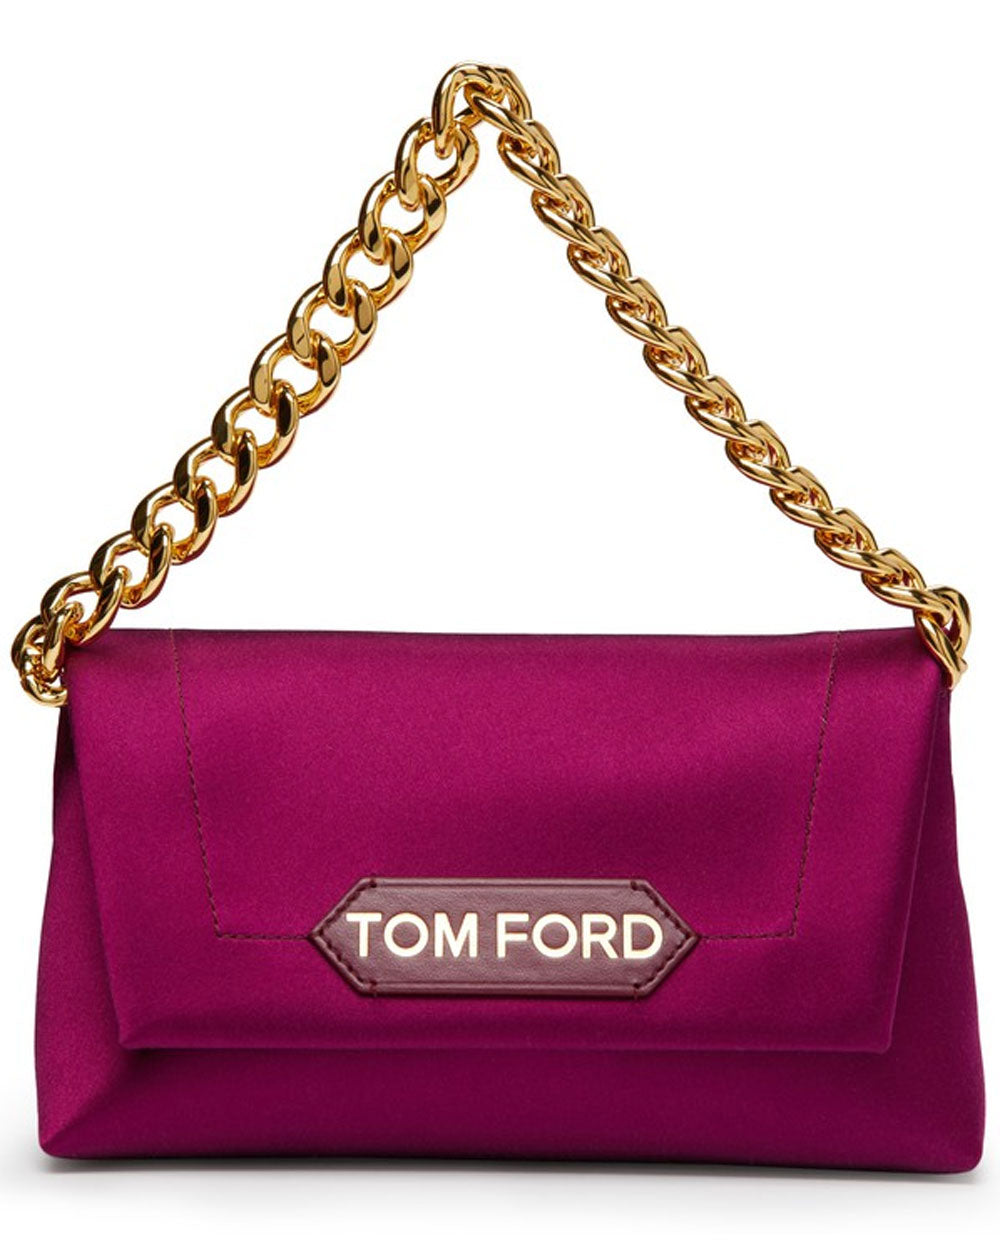 Tom Ford Large Natalia Alligator Chain Shoulder Bag in Red